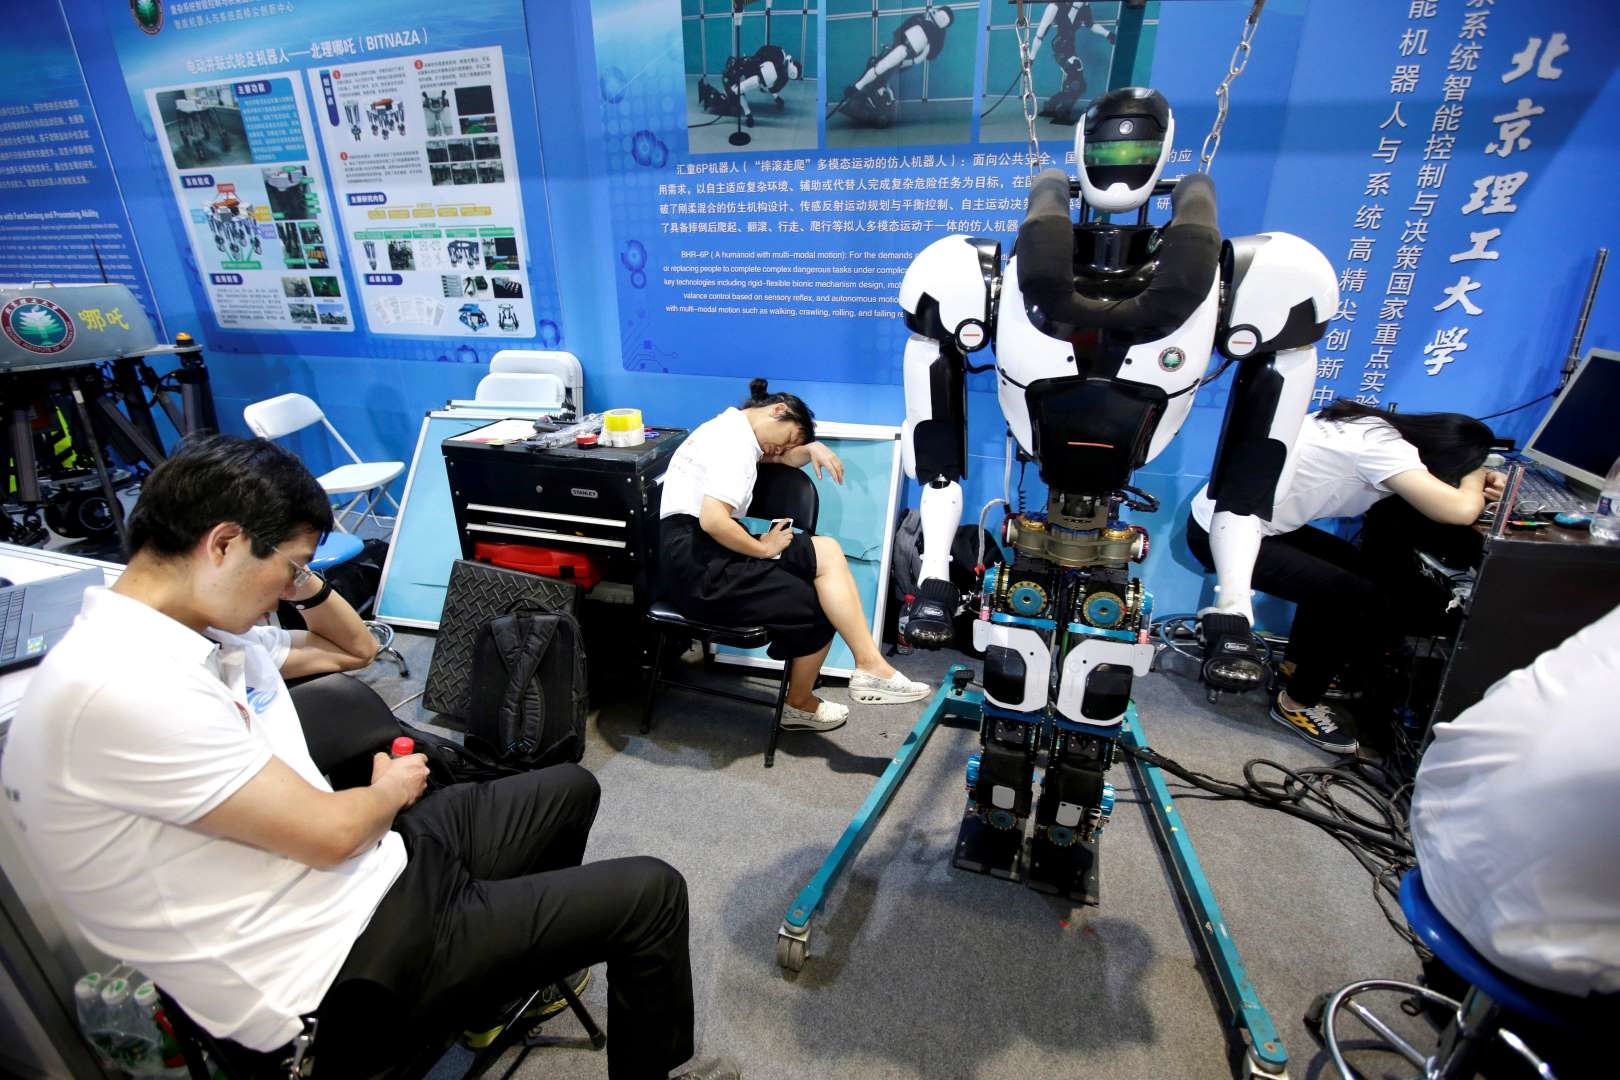 کنفرانس جهانی ربات ۲۰۱۸ در پکن